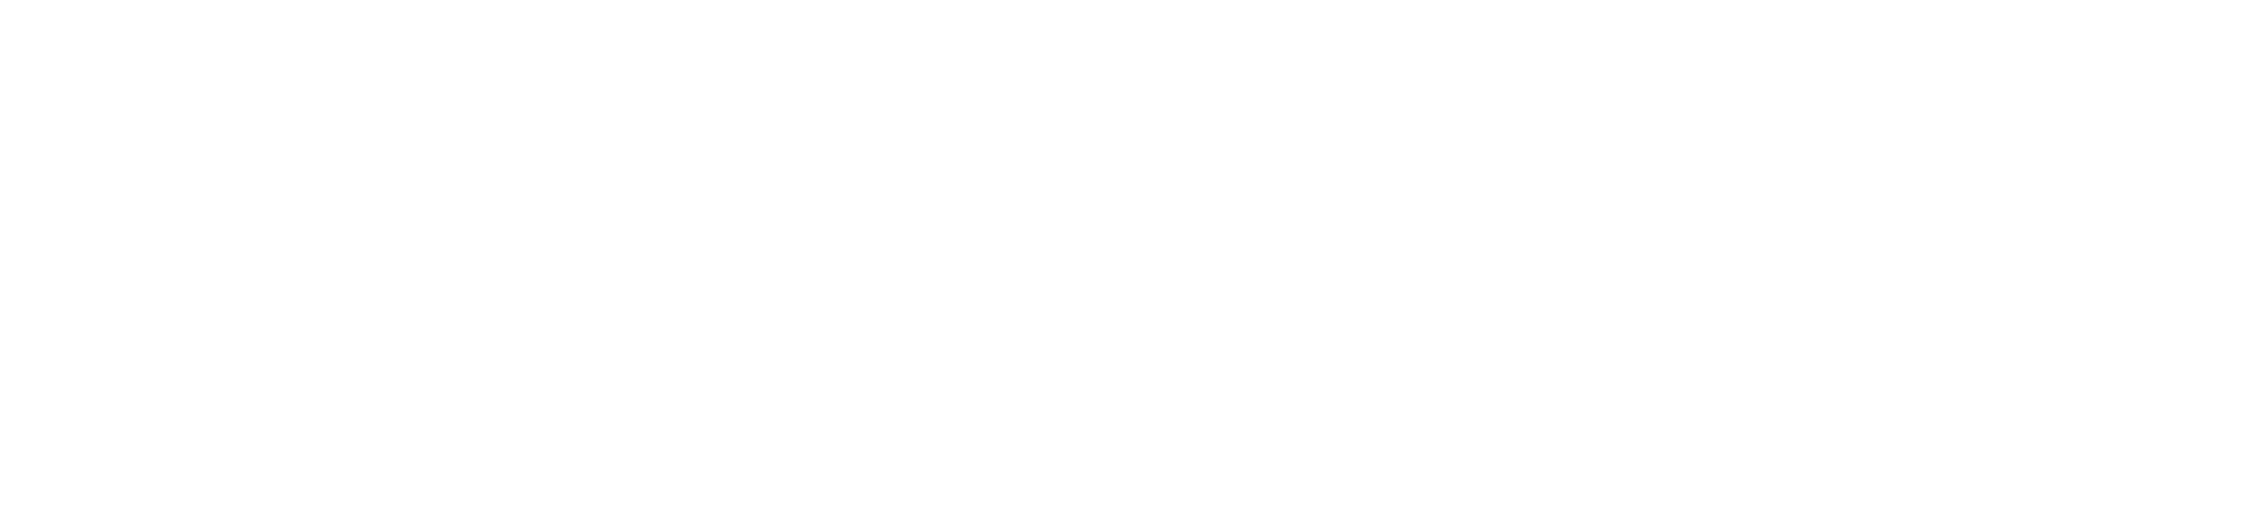 Meevu